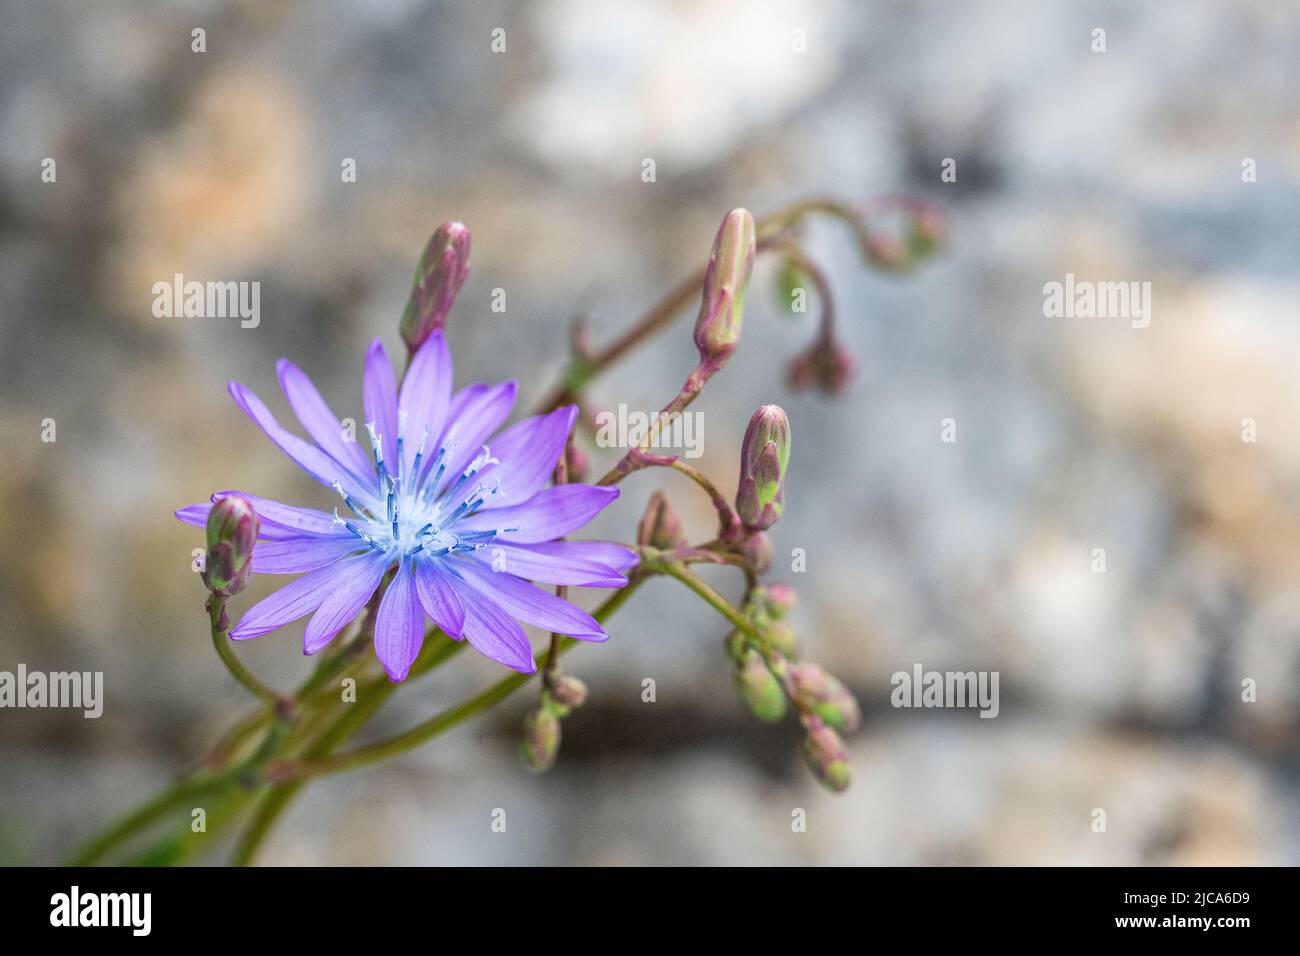 La chicorée commune (Cichorium intybus) est une plante herbacée vivace quelque peu ligneuse de la famille des Asteraceae, habituellement avec des fleurs bleu vif. Banque D'Images